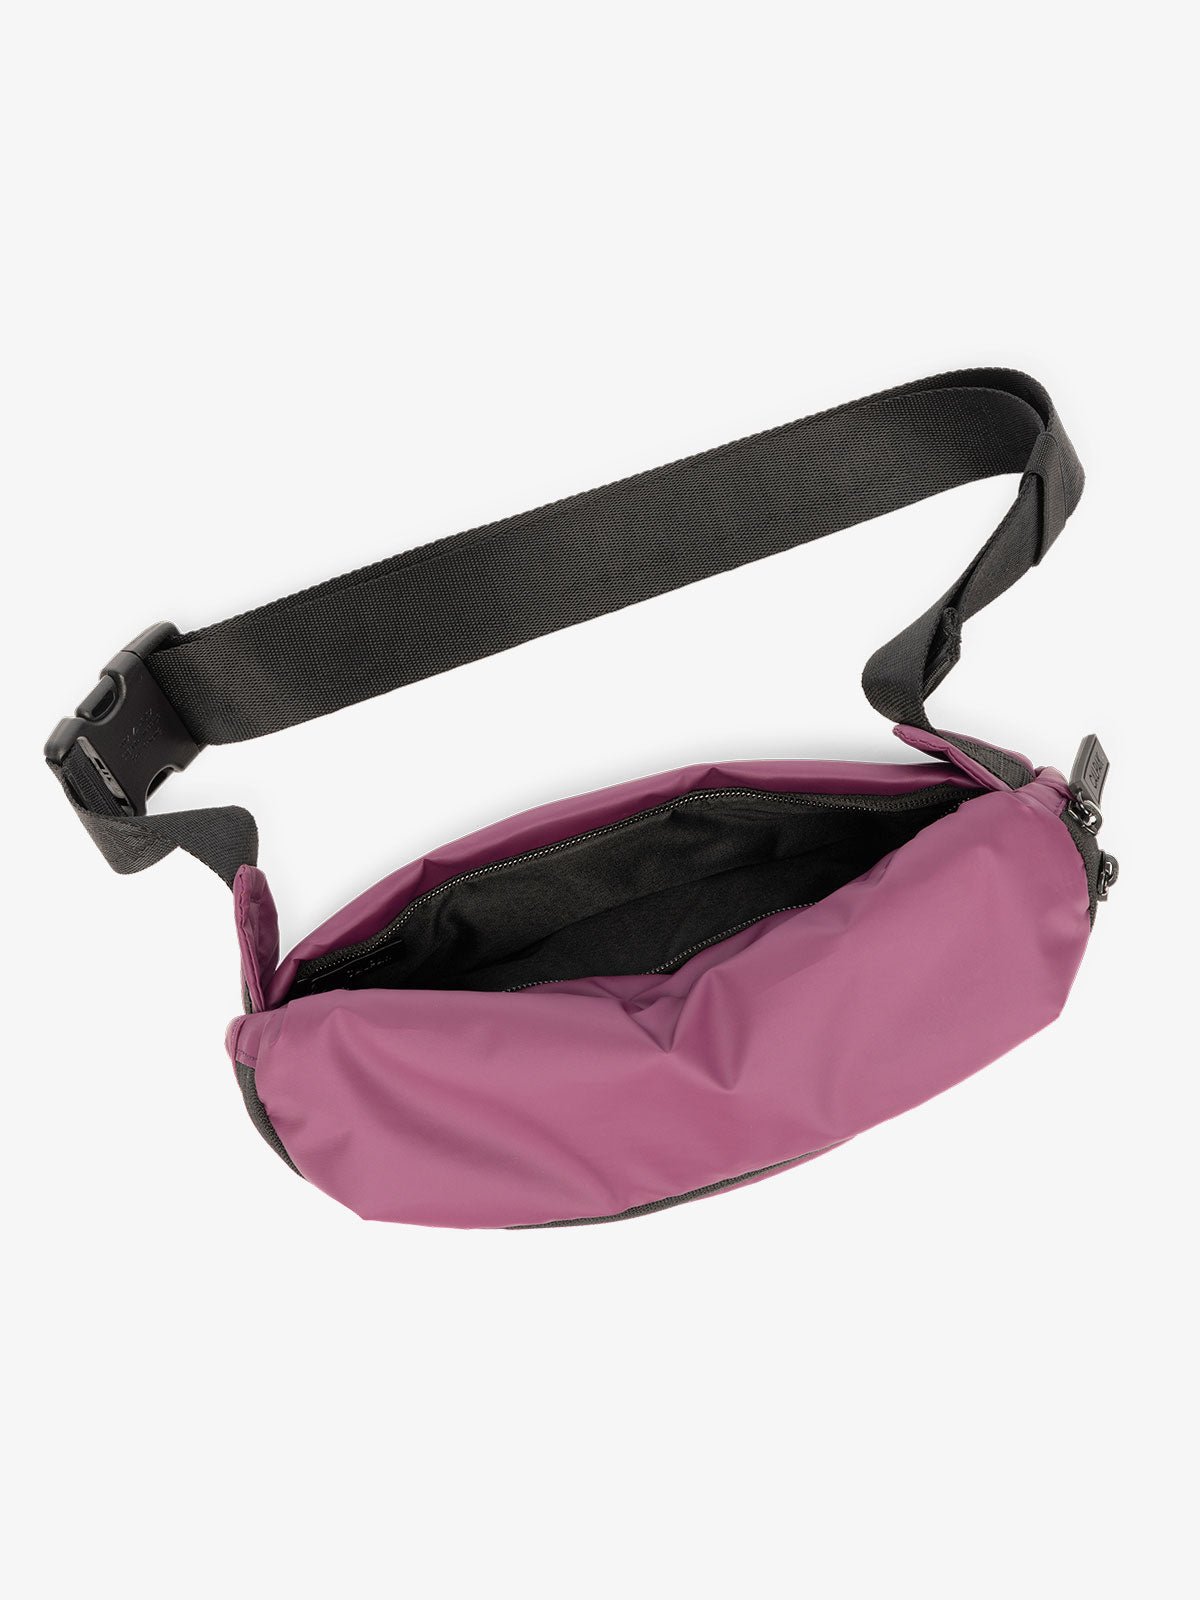 CALPAK Luka Belt Bag with adjustable strap and hidden back pocket in purple